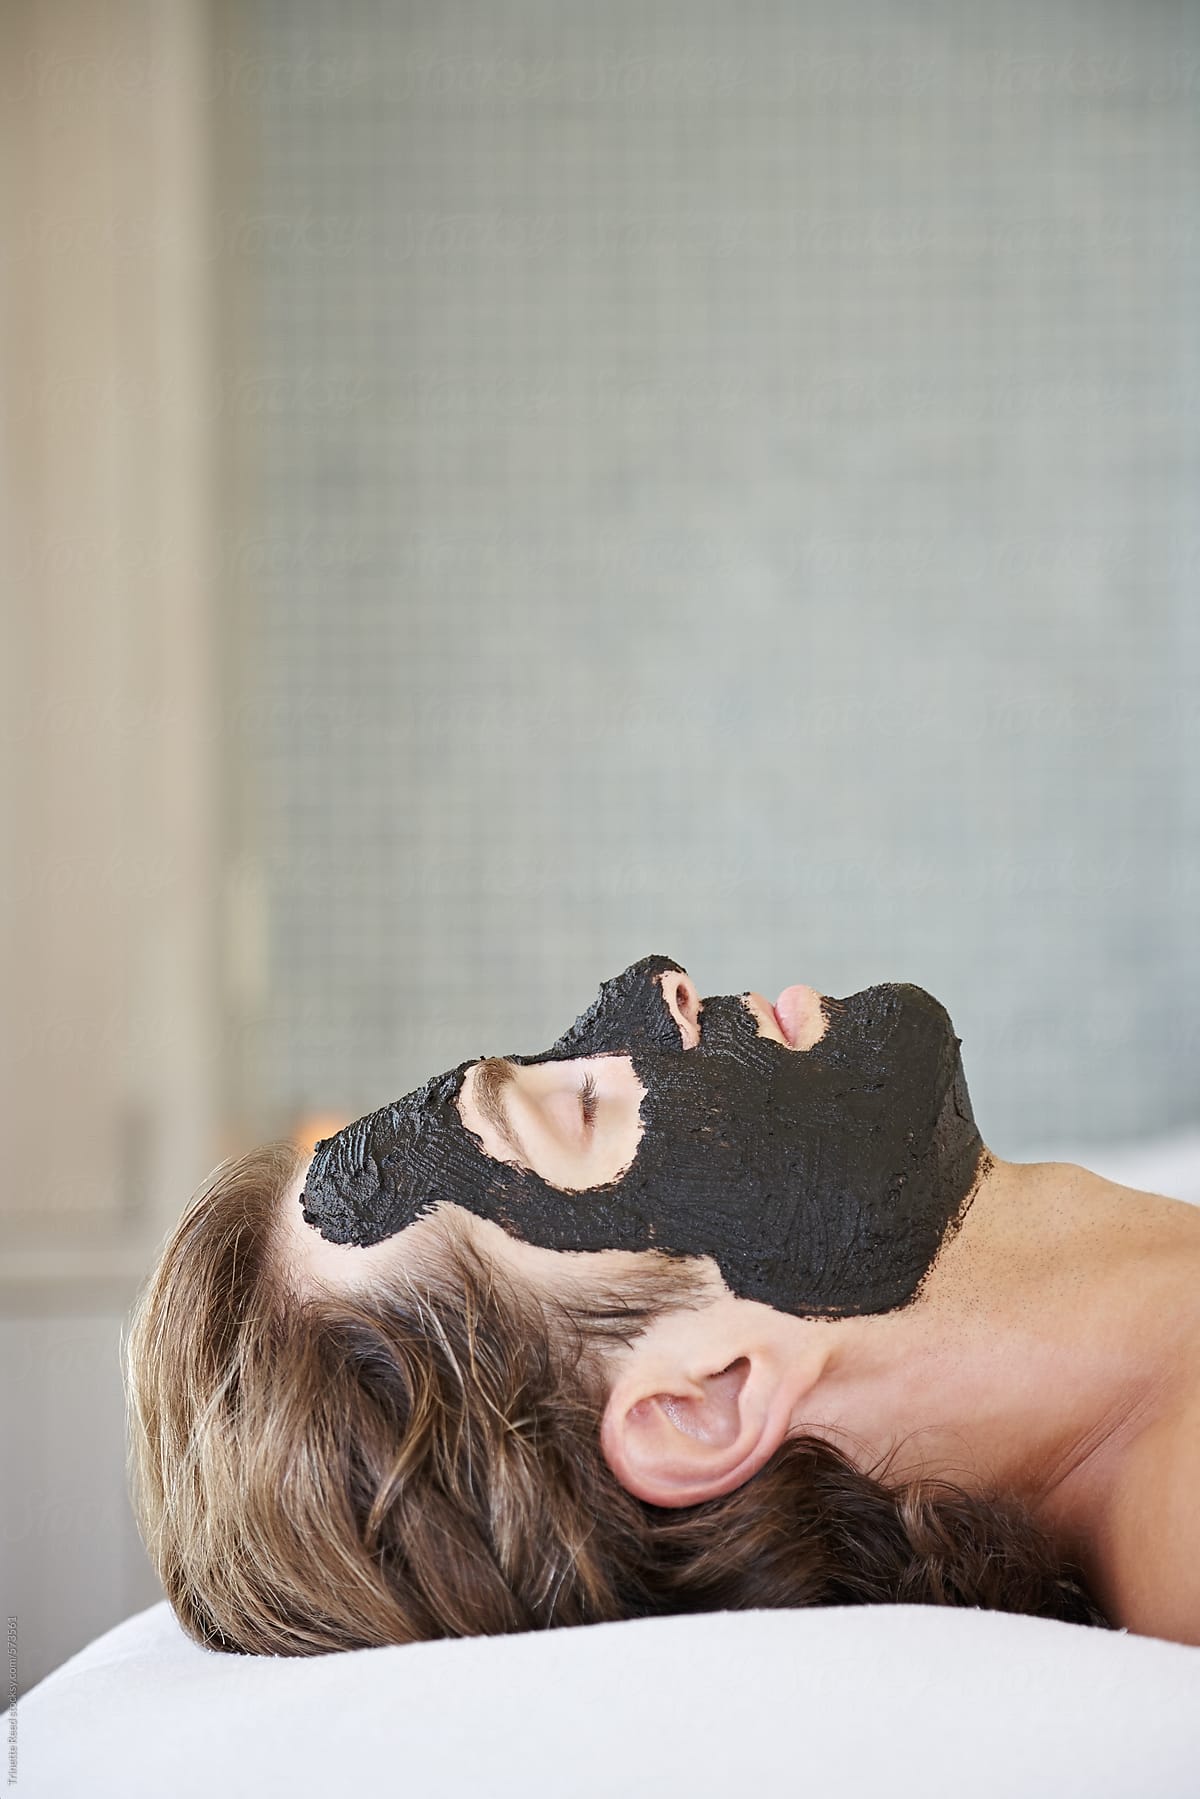 Man receiving a natural mud facial at luxury spa